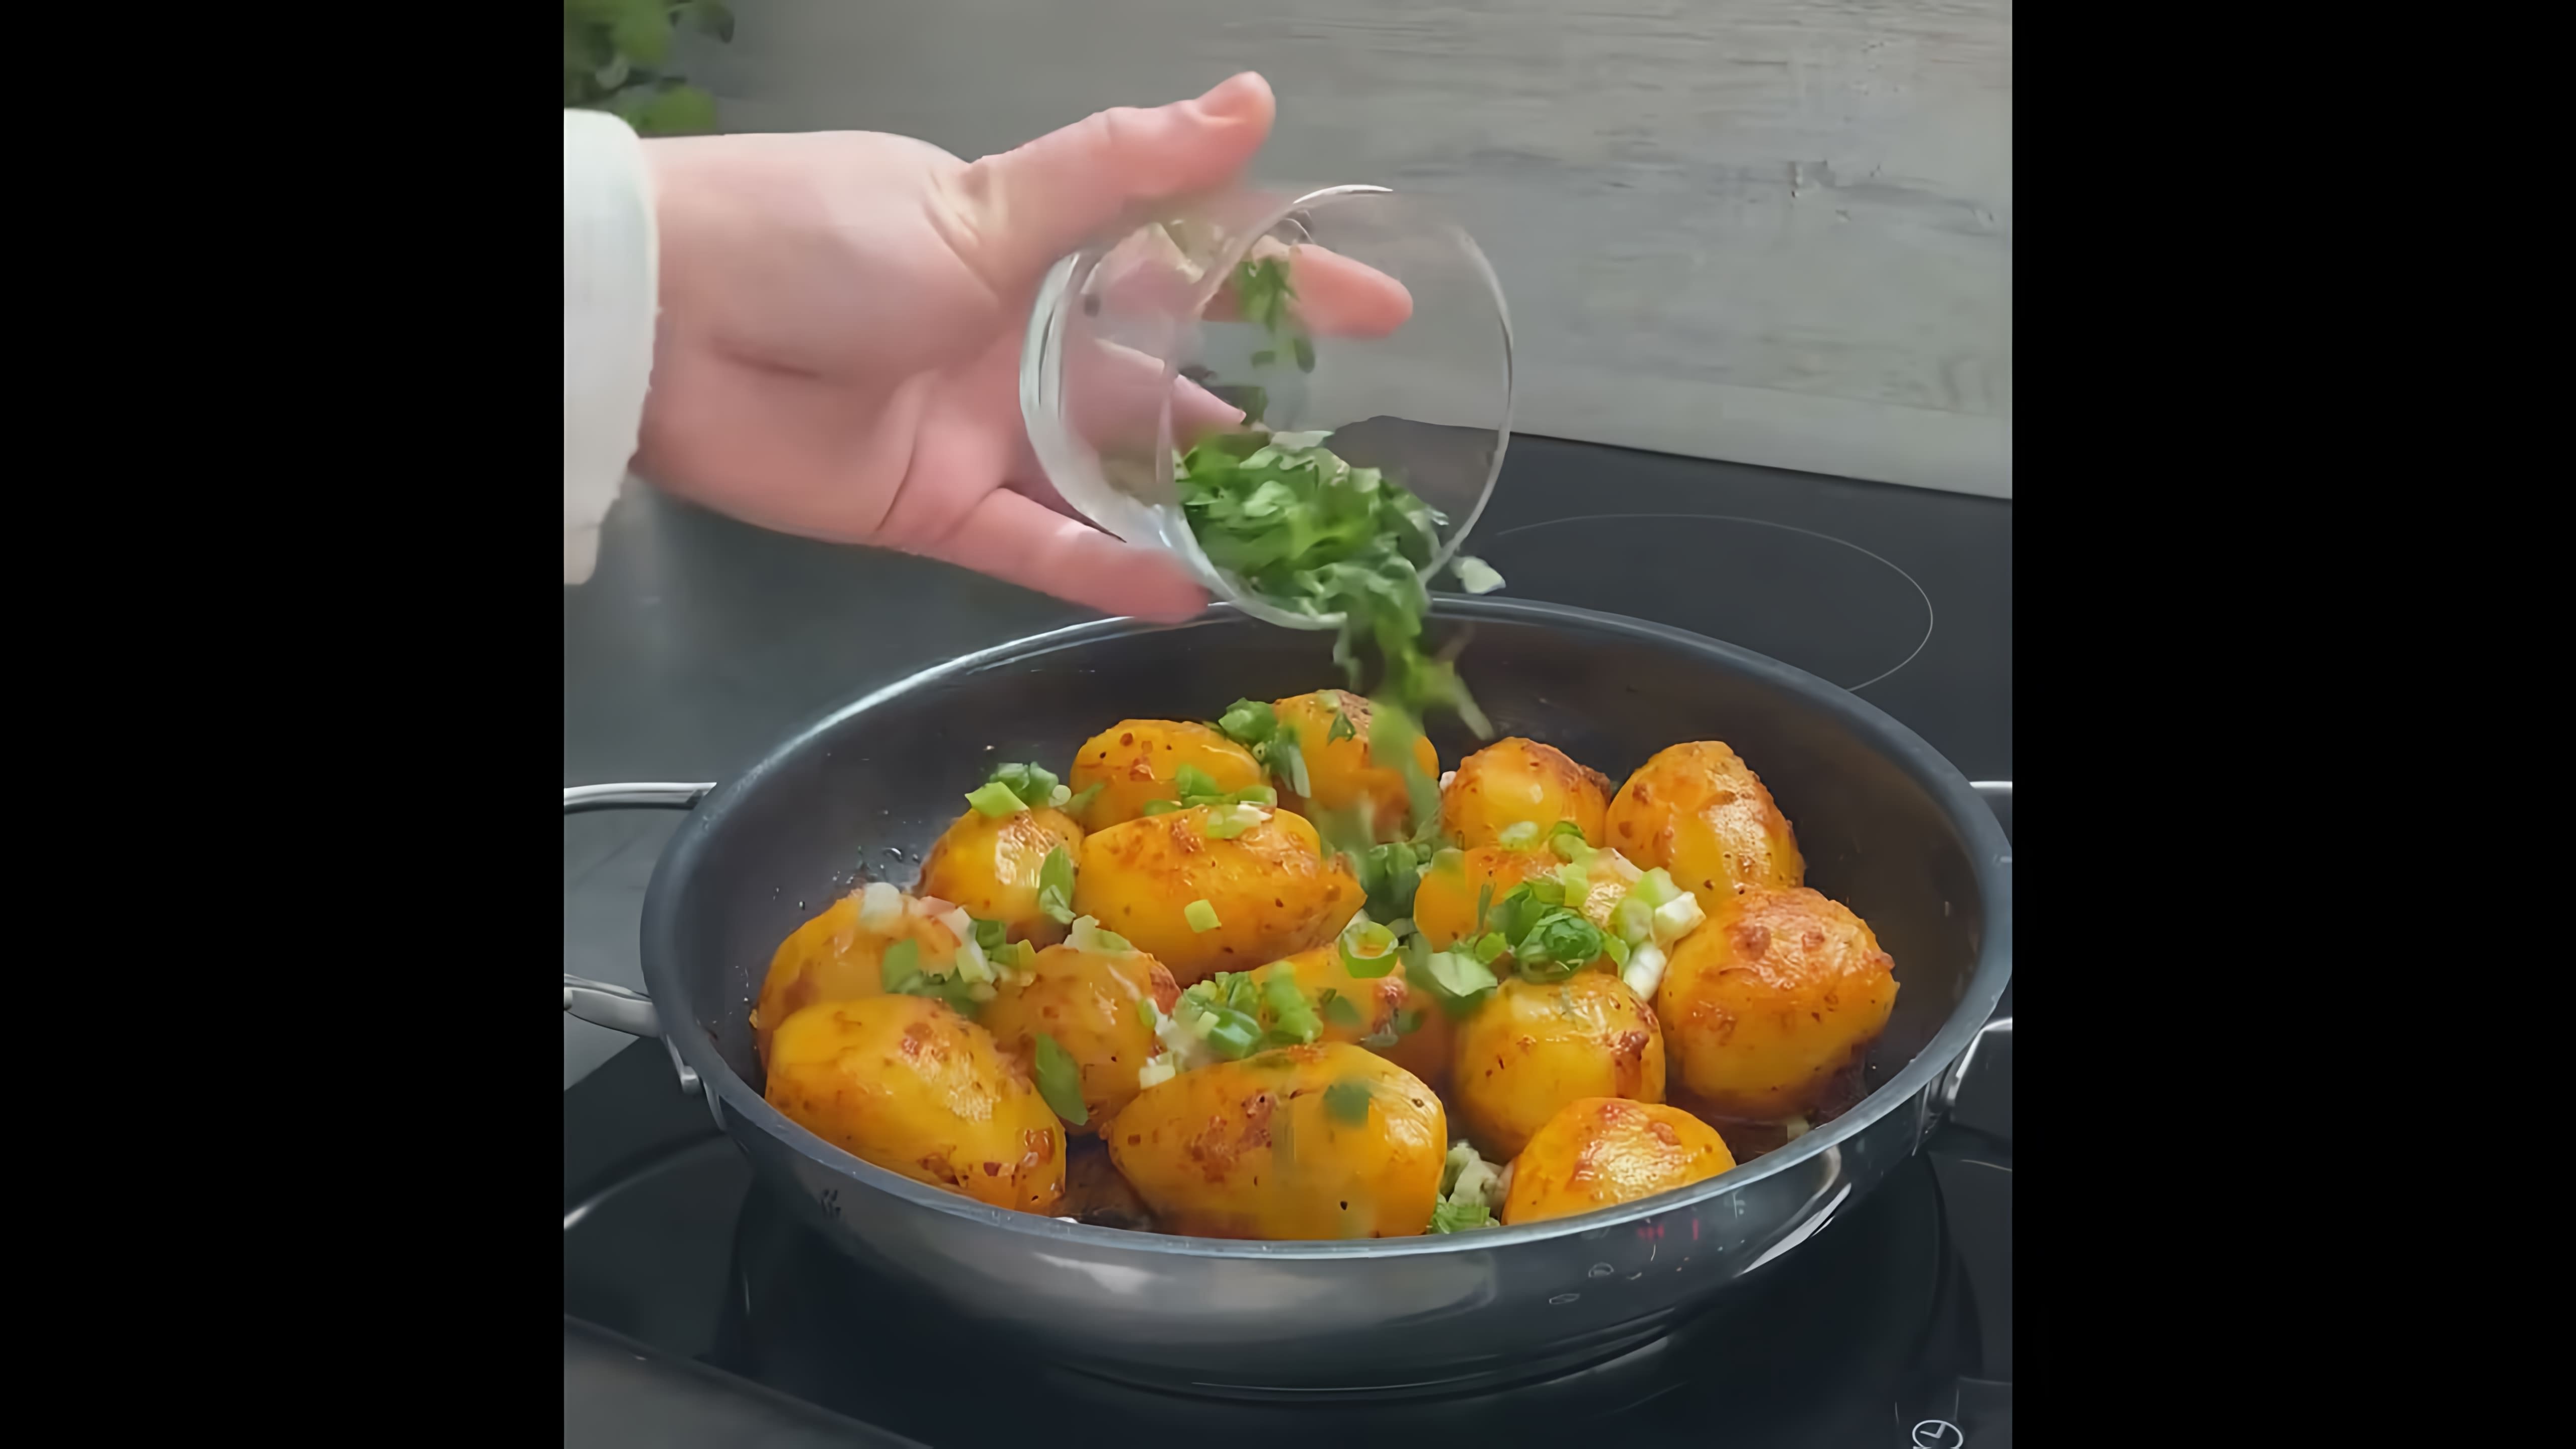 В этом видео-ролике демонстрируется процесс приготовления картофеля со специями и сыром на сковороде